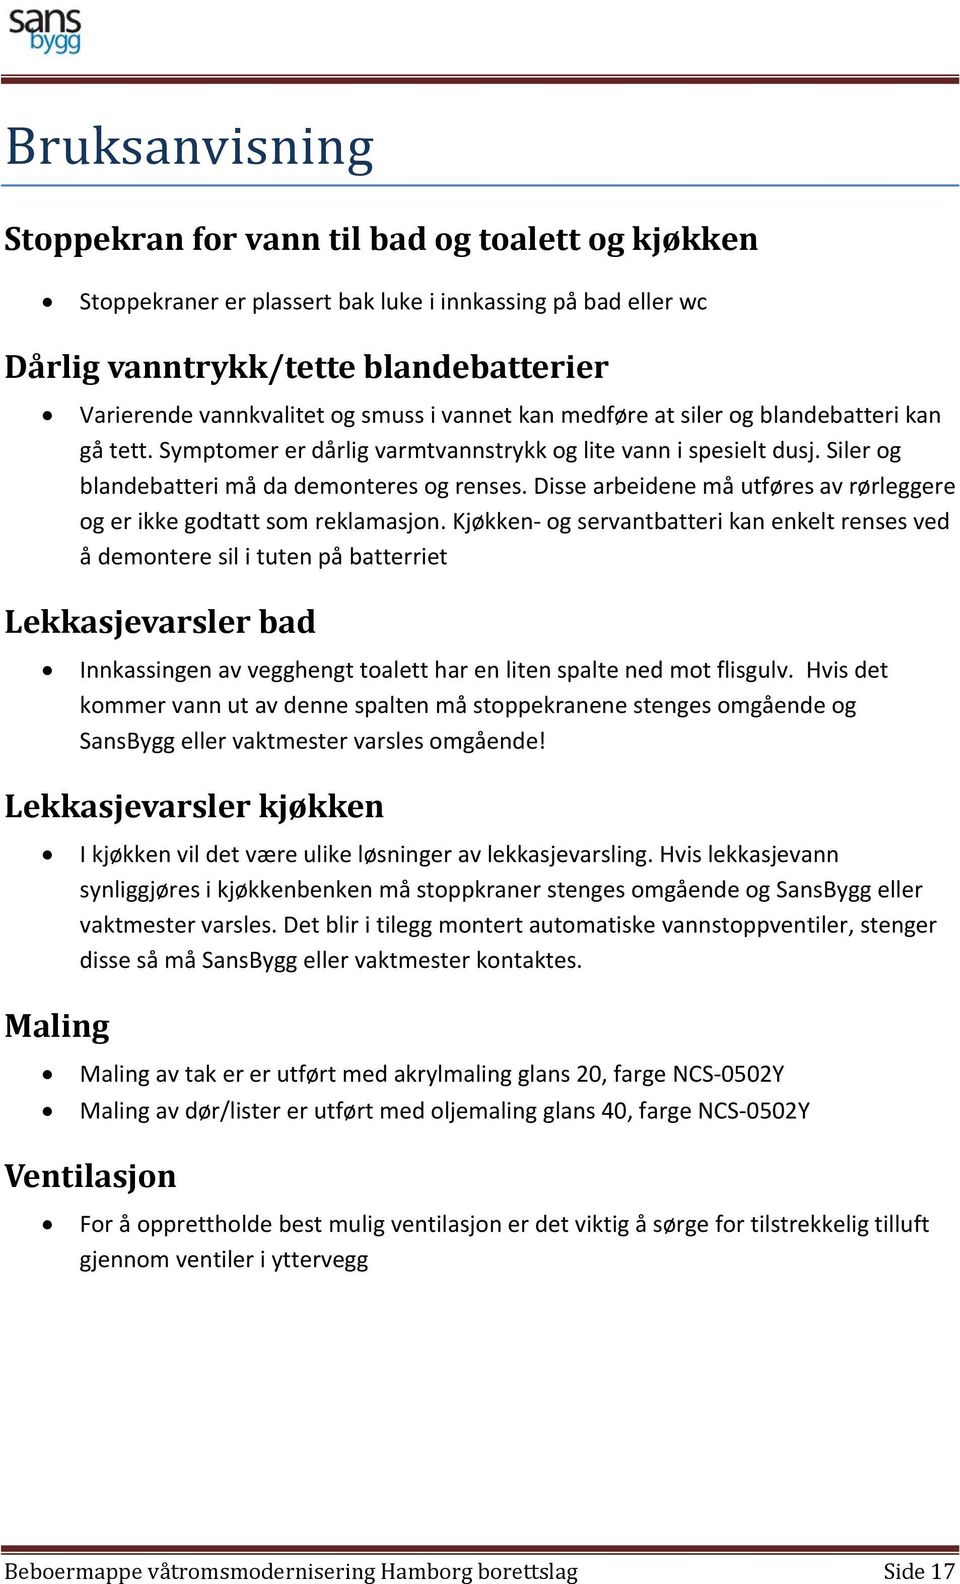 BEBOERMAPPE. Våtromsmodernisering Hamborg borettslag - PDF Free Download